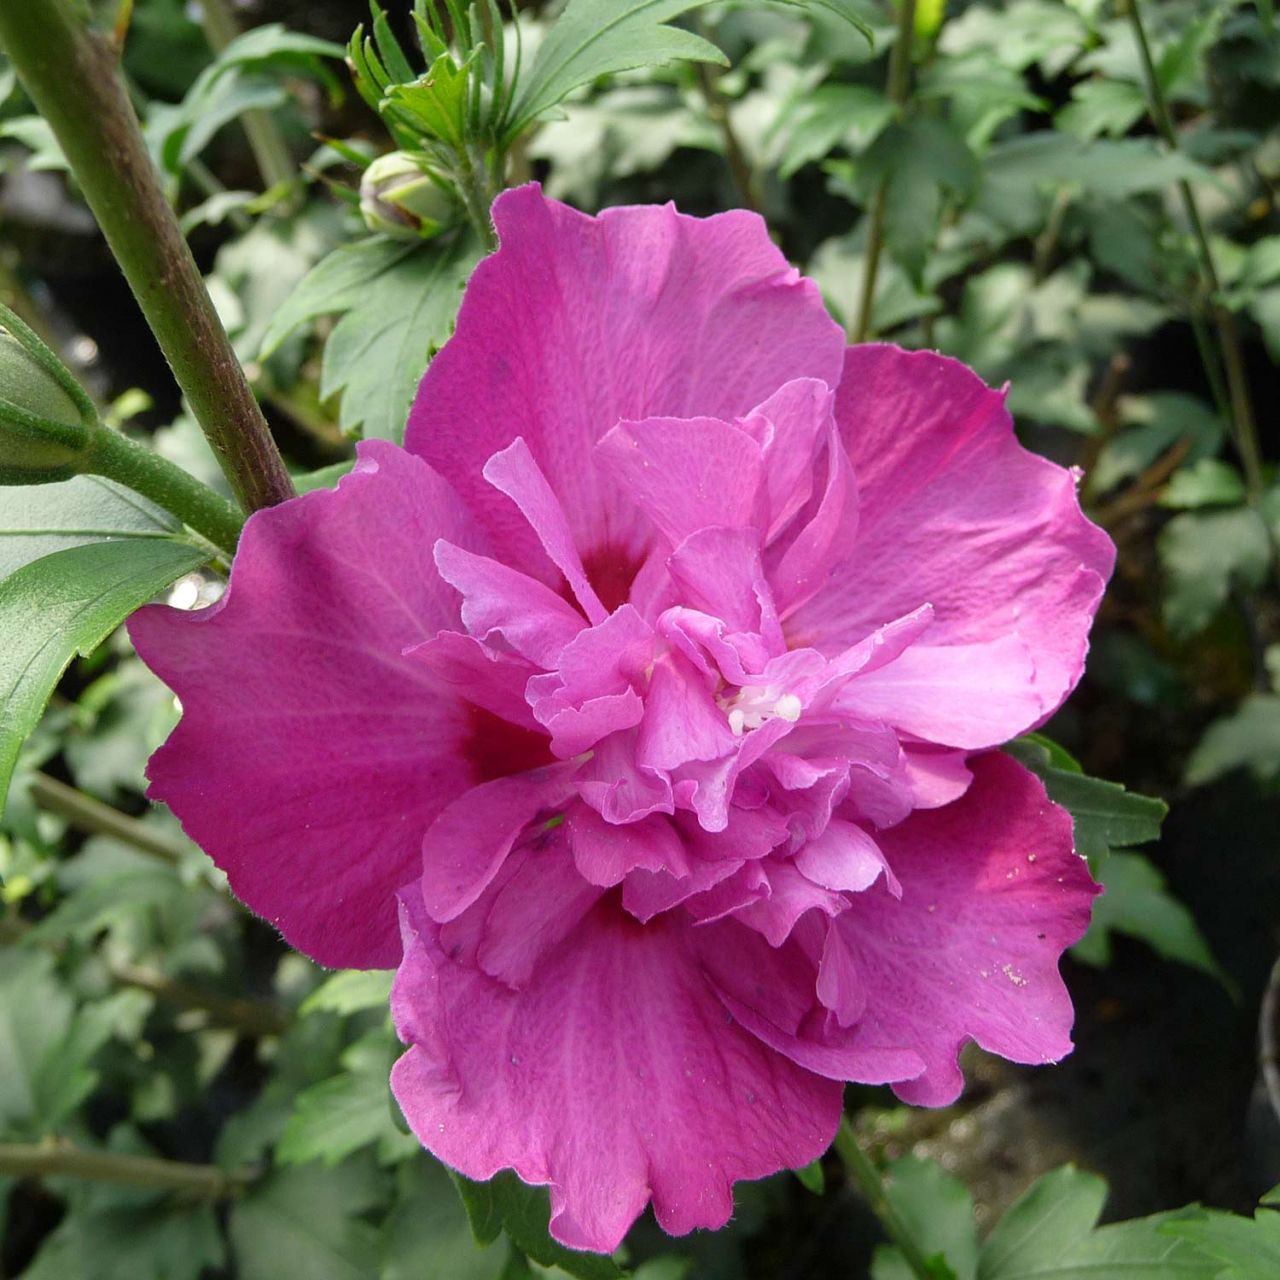 Kategorie <b>Blütensträucher und Ziergehölze </b> - Hibiscus 'Purple Ruffles®' - Hibiscus syriacus 'Purple Ruffles®'